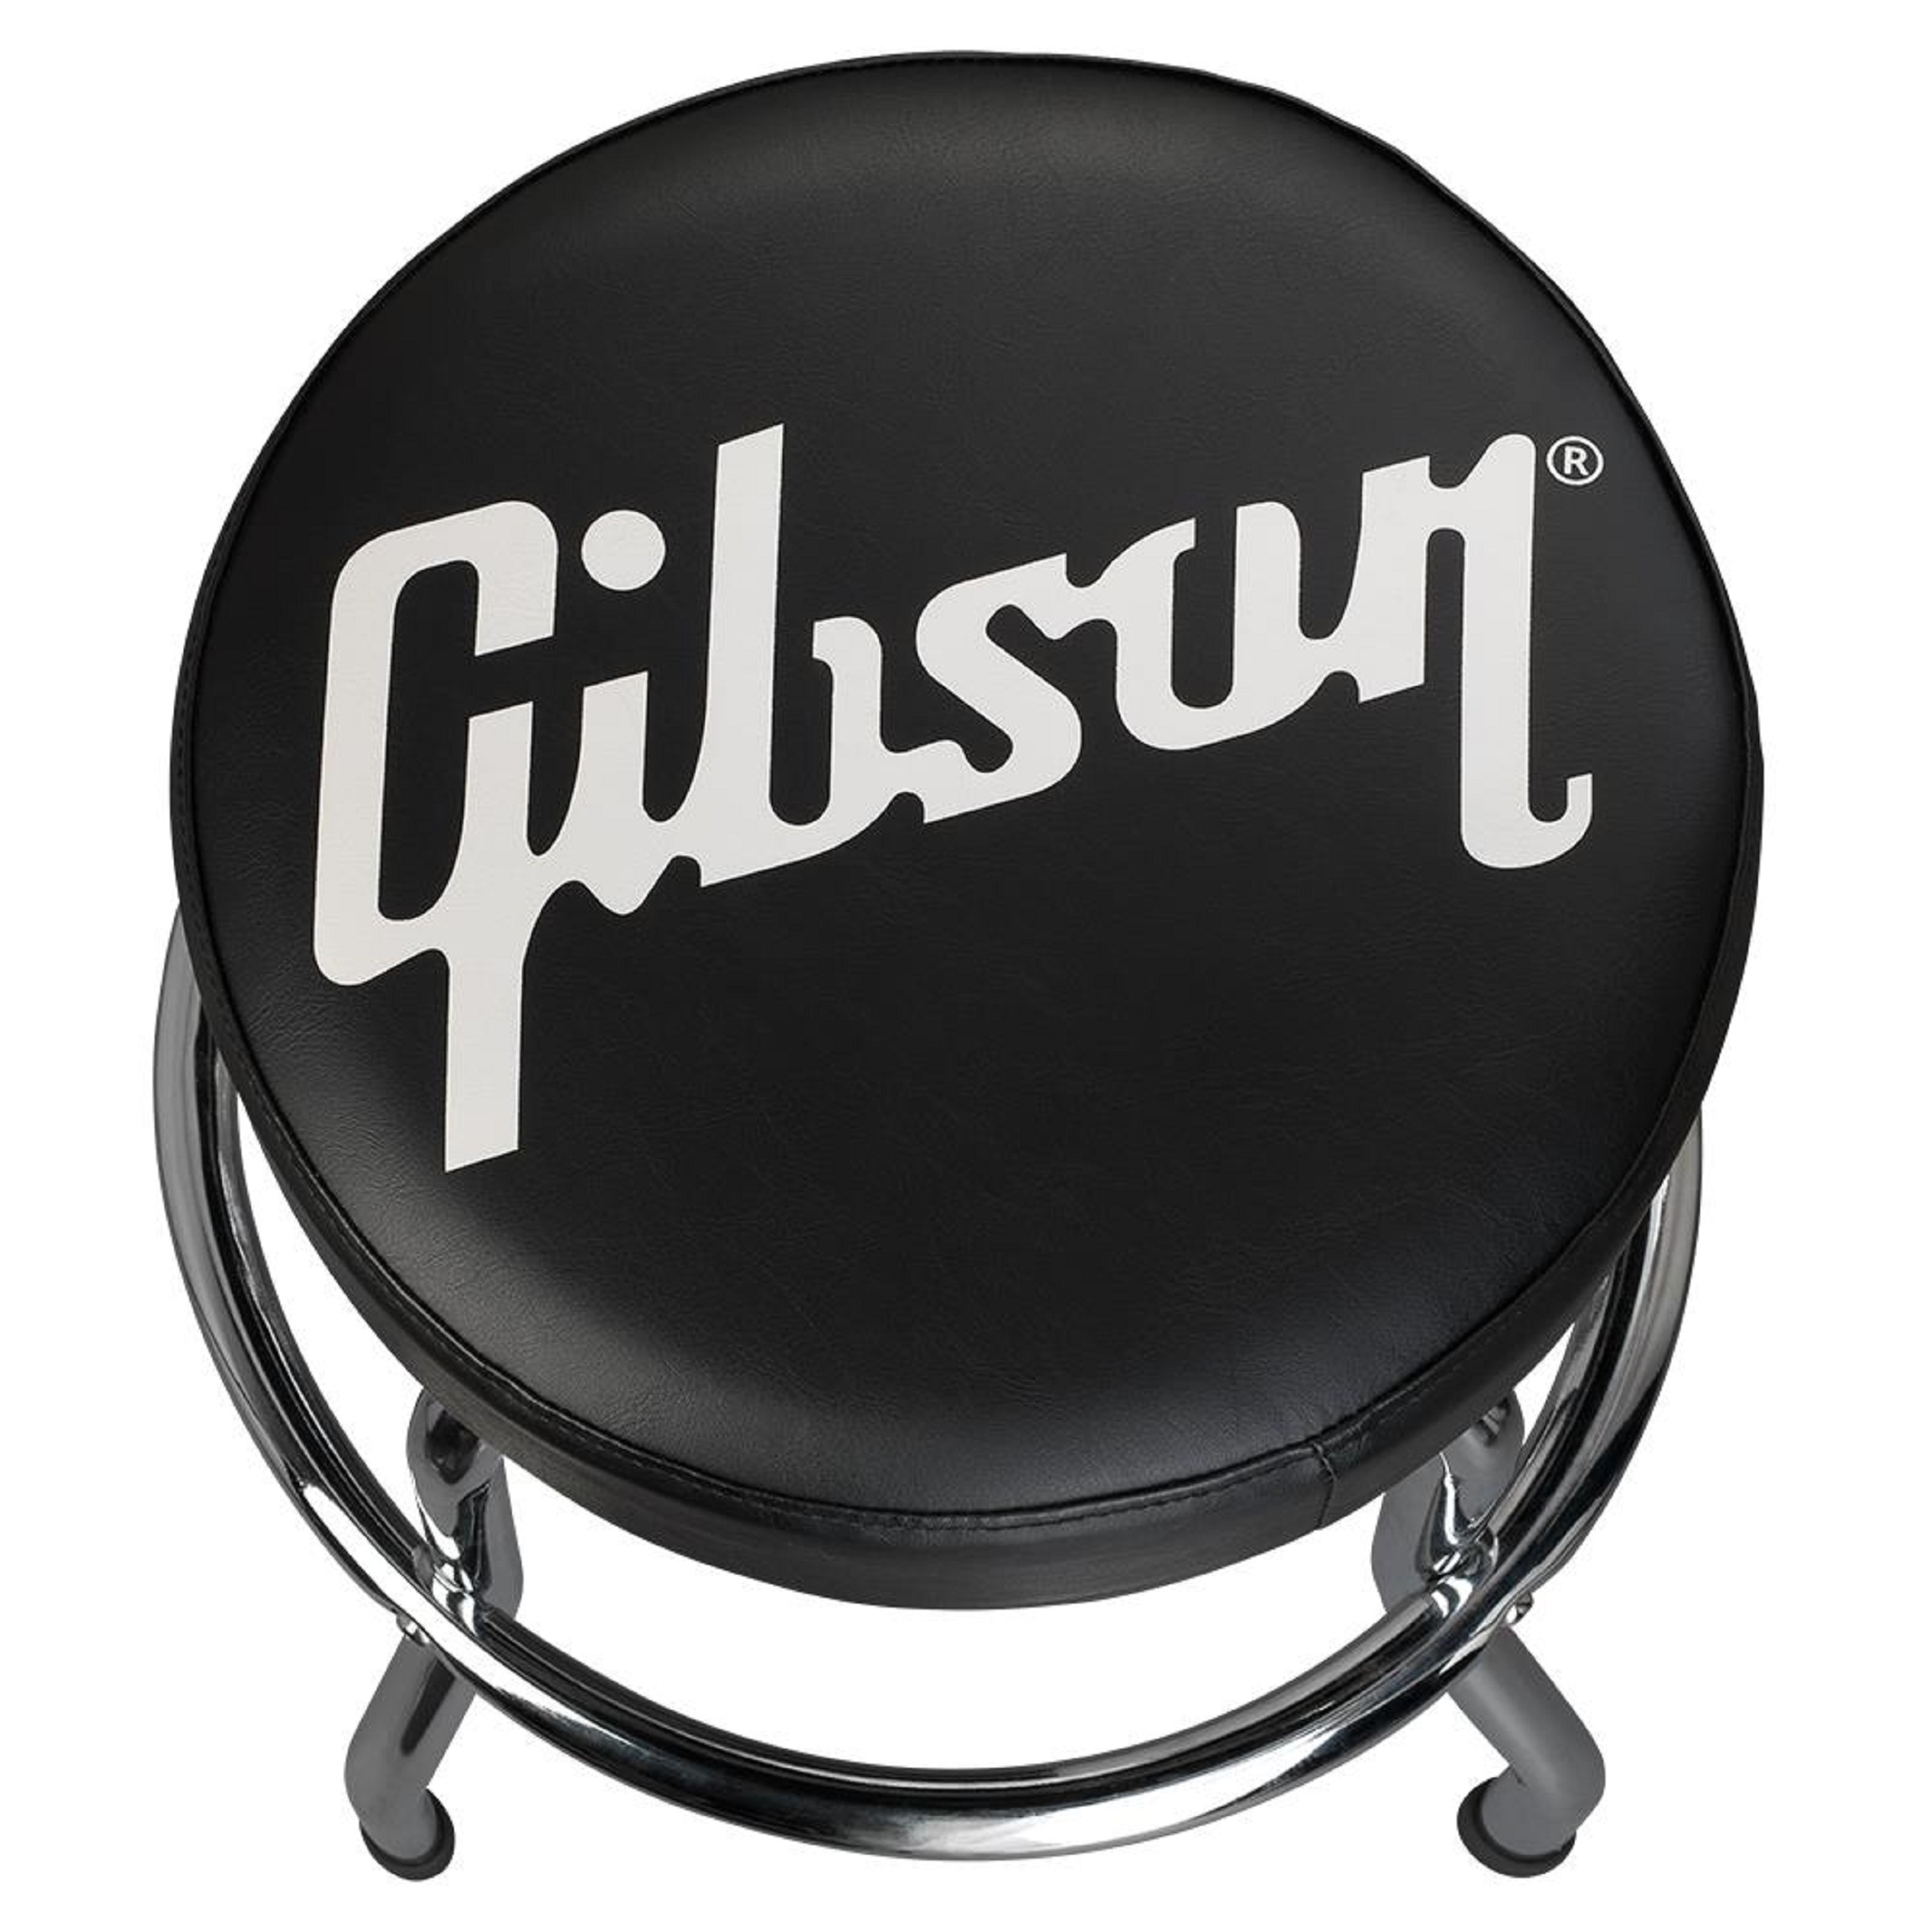 GIBSON Premium Playing Stool, Standard Logo, Short